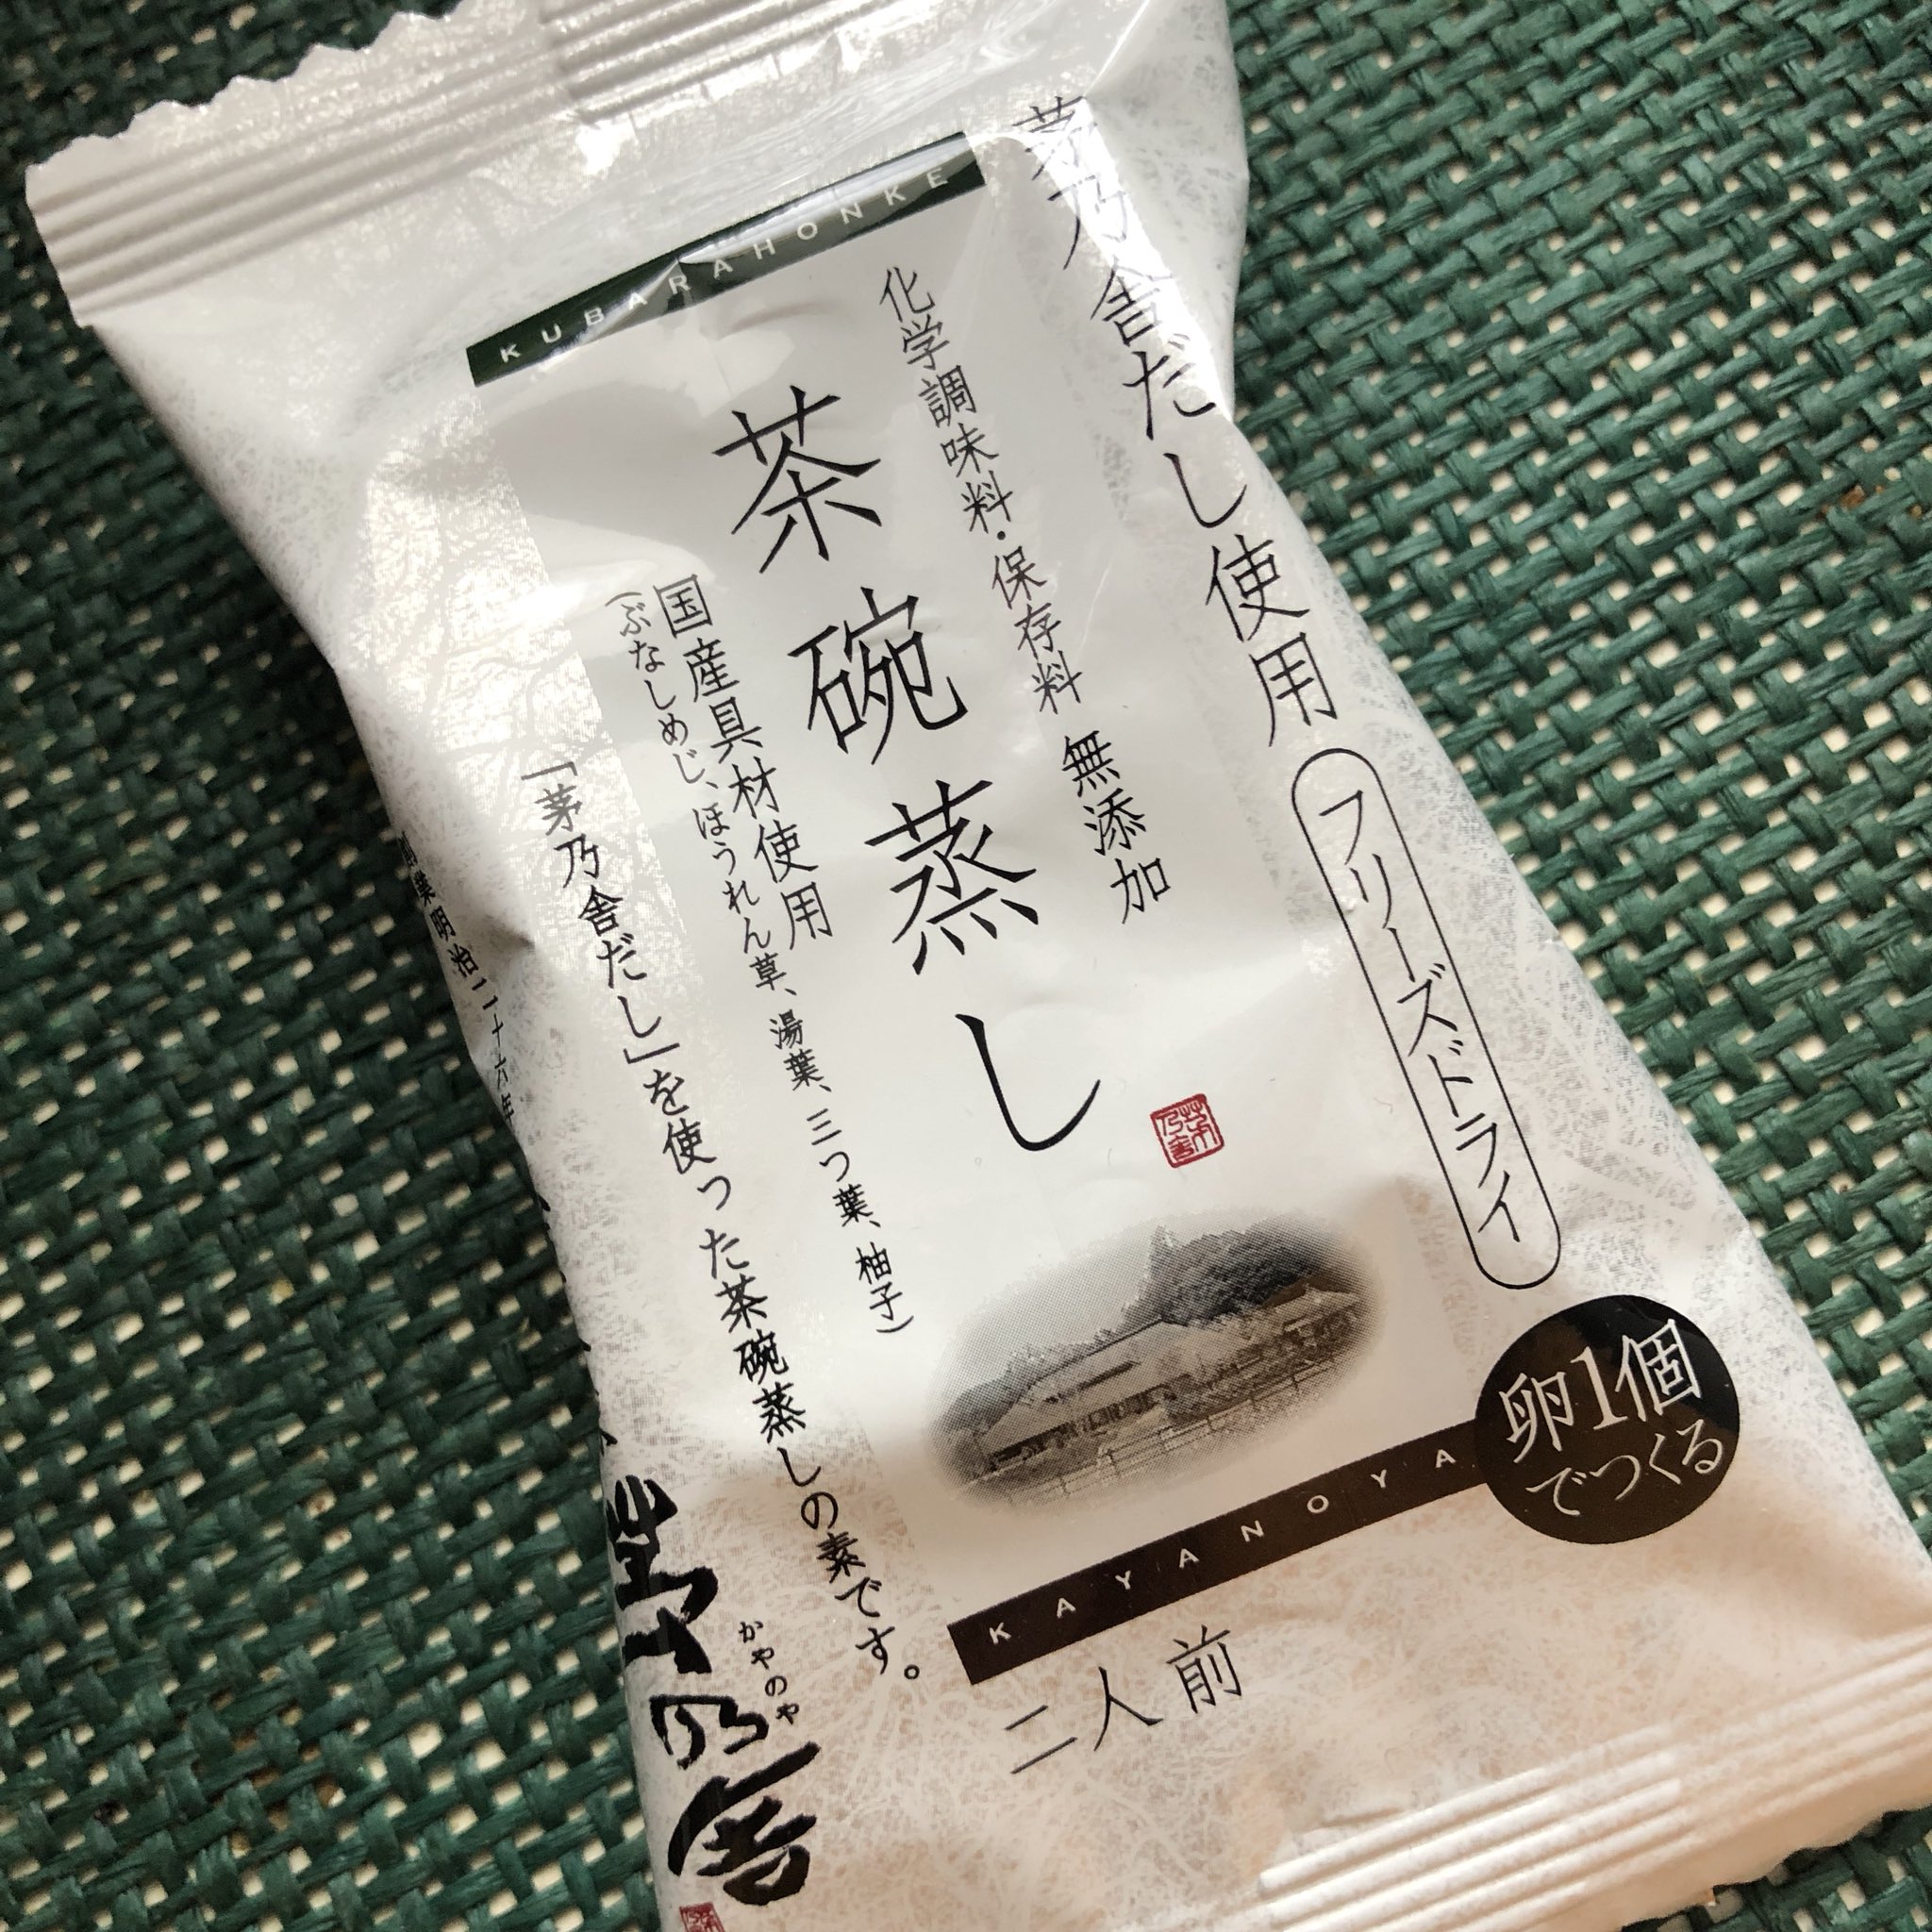 ちゅか 福岡で買ってきた茶碗蒸しの素を使って茶碗蒸し作ったー 茅乃舎やっぱりすごい 美味しすぎる